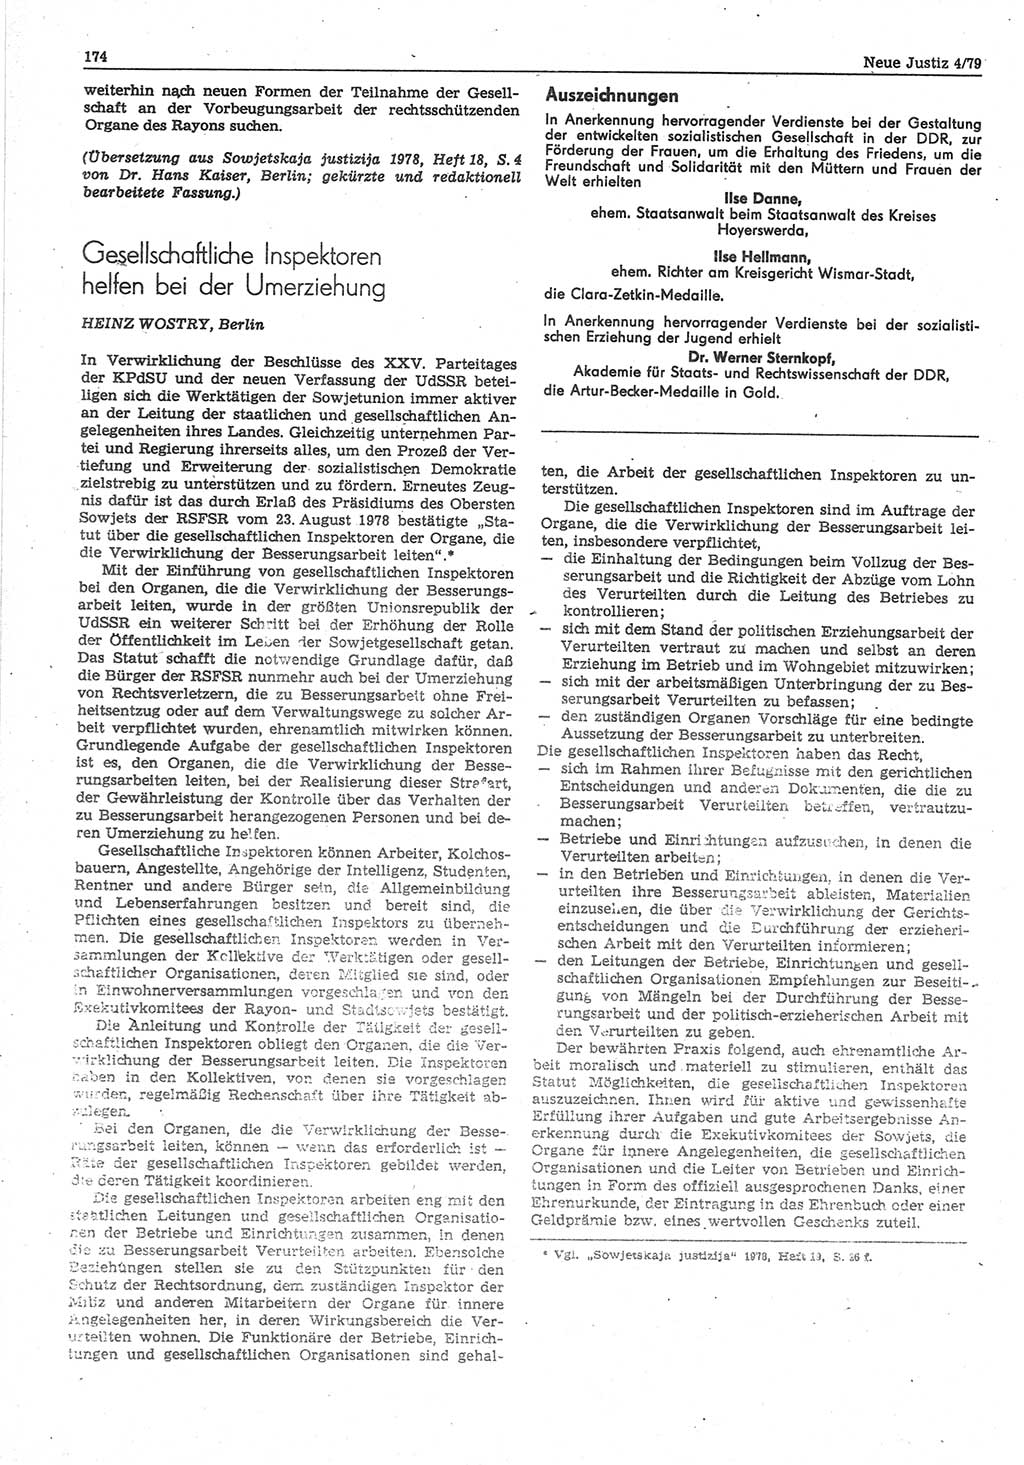 Neue Justiz (NJ), Zeitschrift für sozialistisches Recht und Gesetzlichkeit [Deutsche Demokratische Republik (DDR)], 33. Jahrgang 1979, Seite 174 (NJ DDR 1979, S. 174)